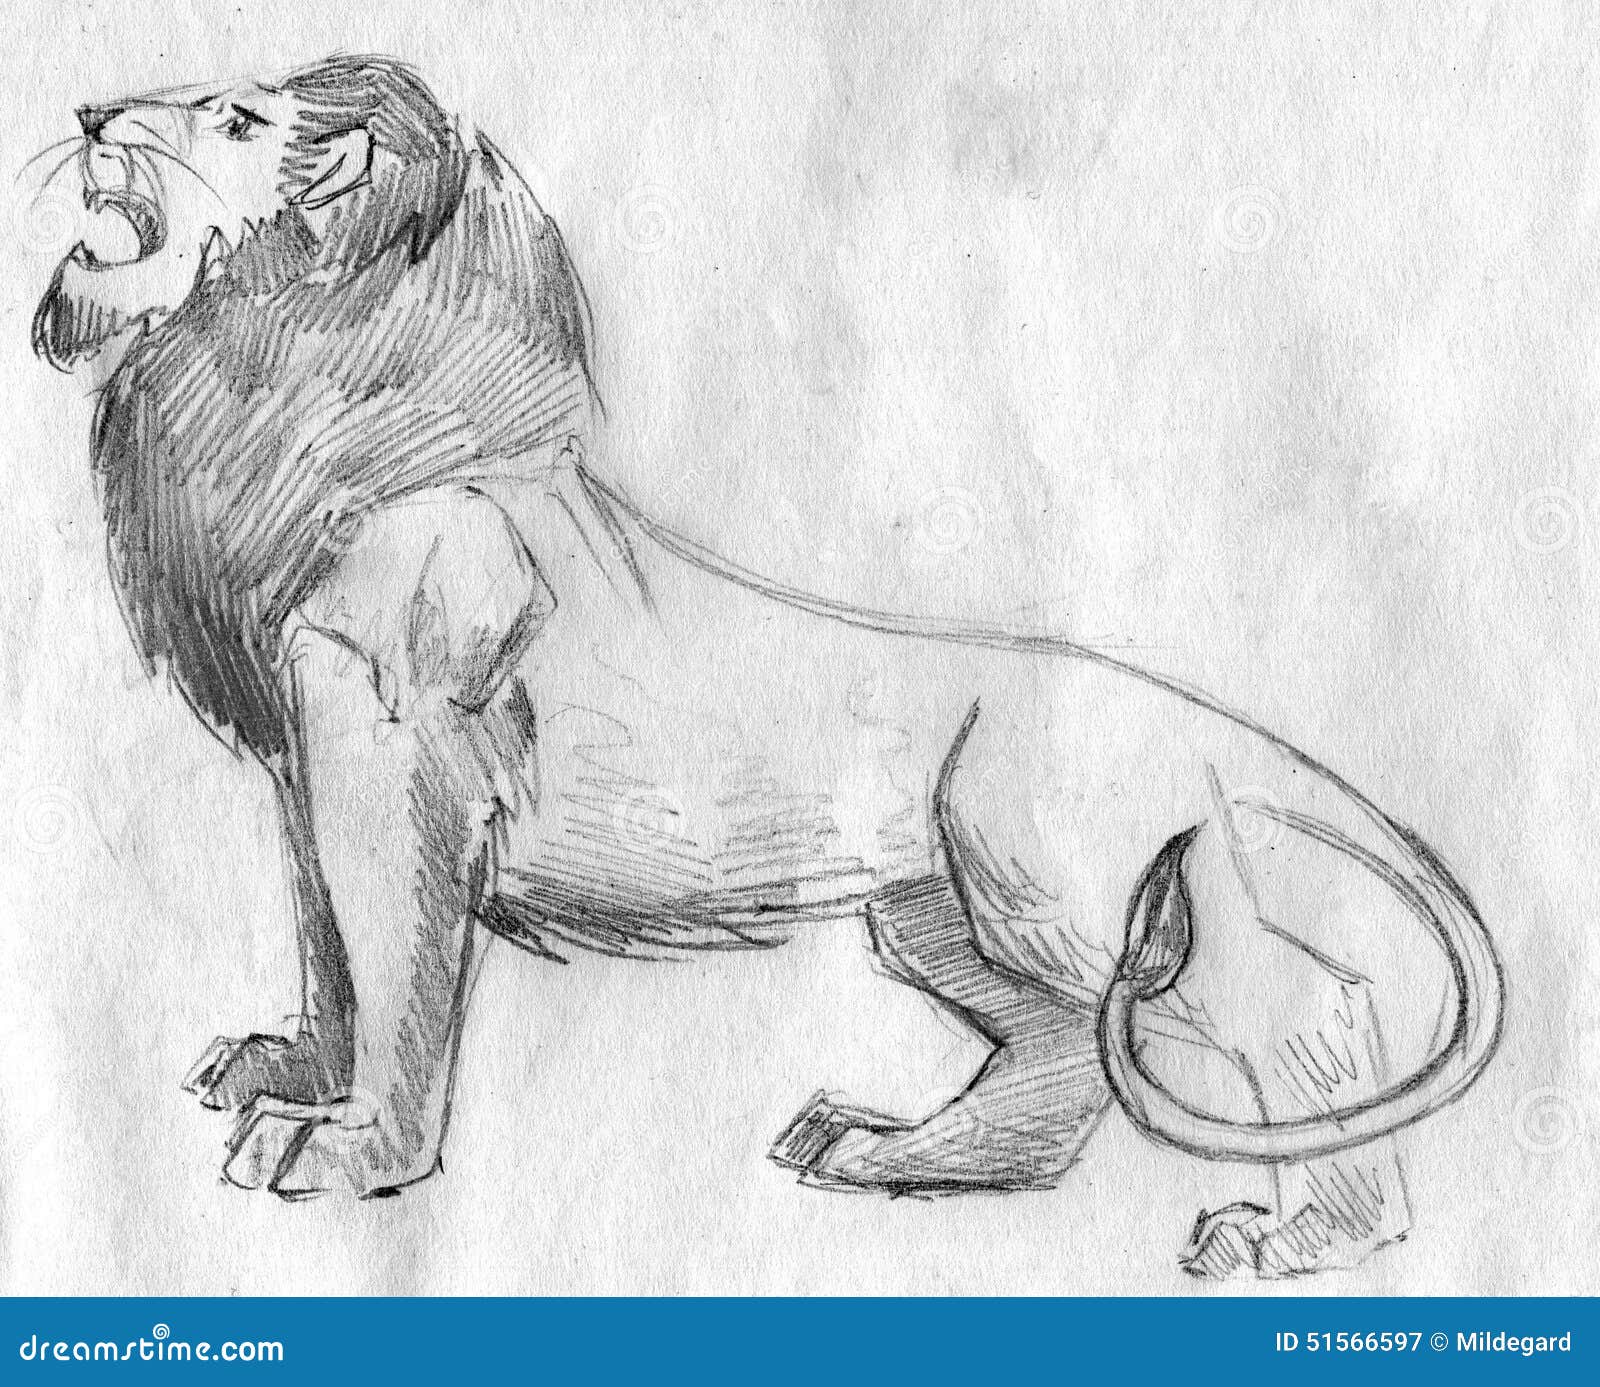 Sketch of lion for kids | Download on Freepik